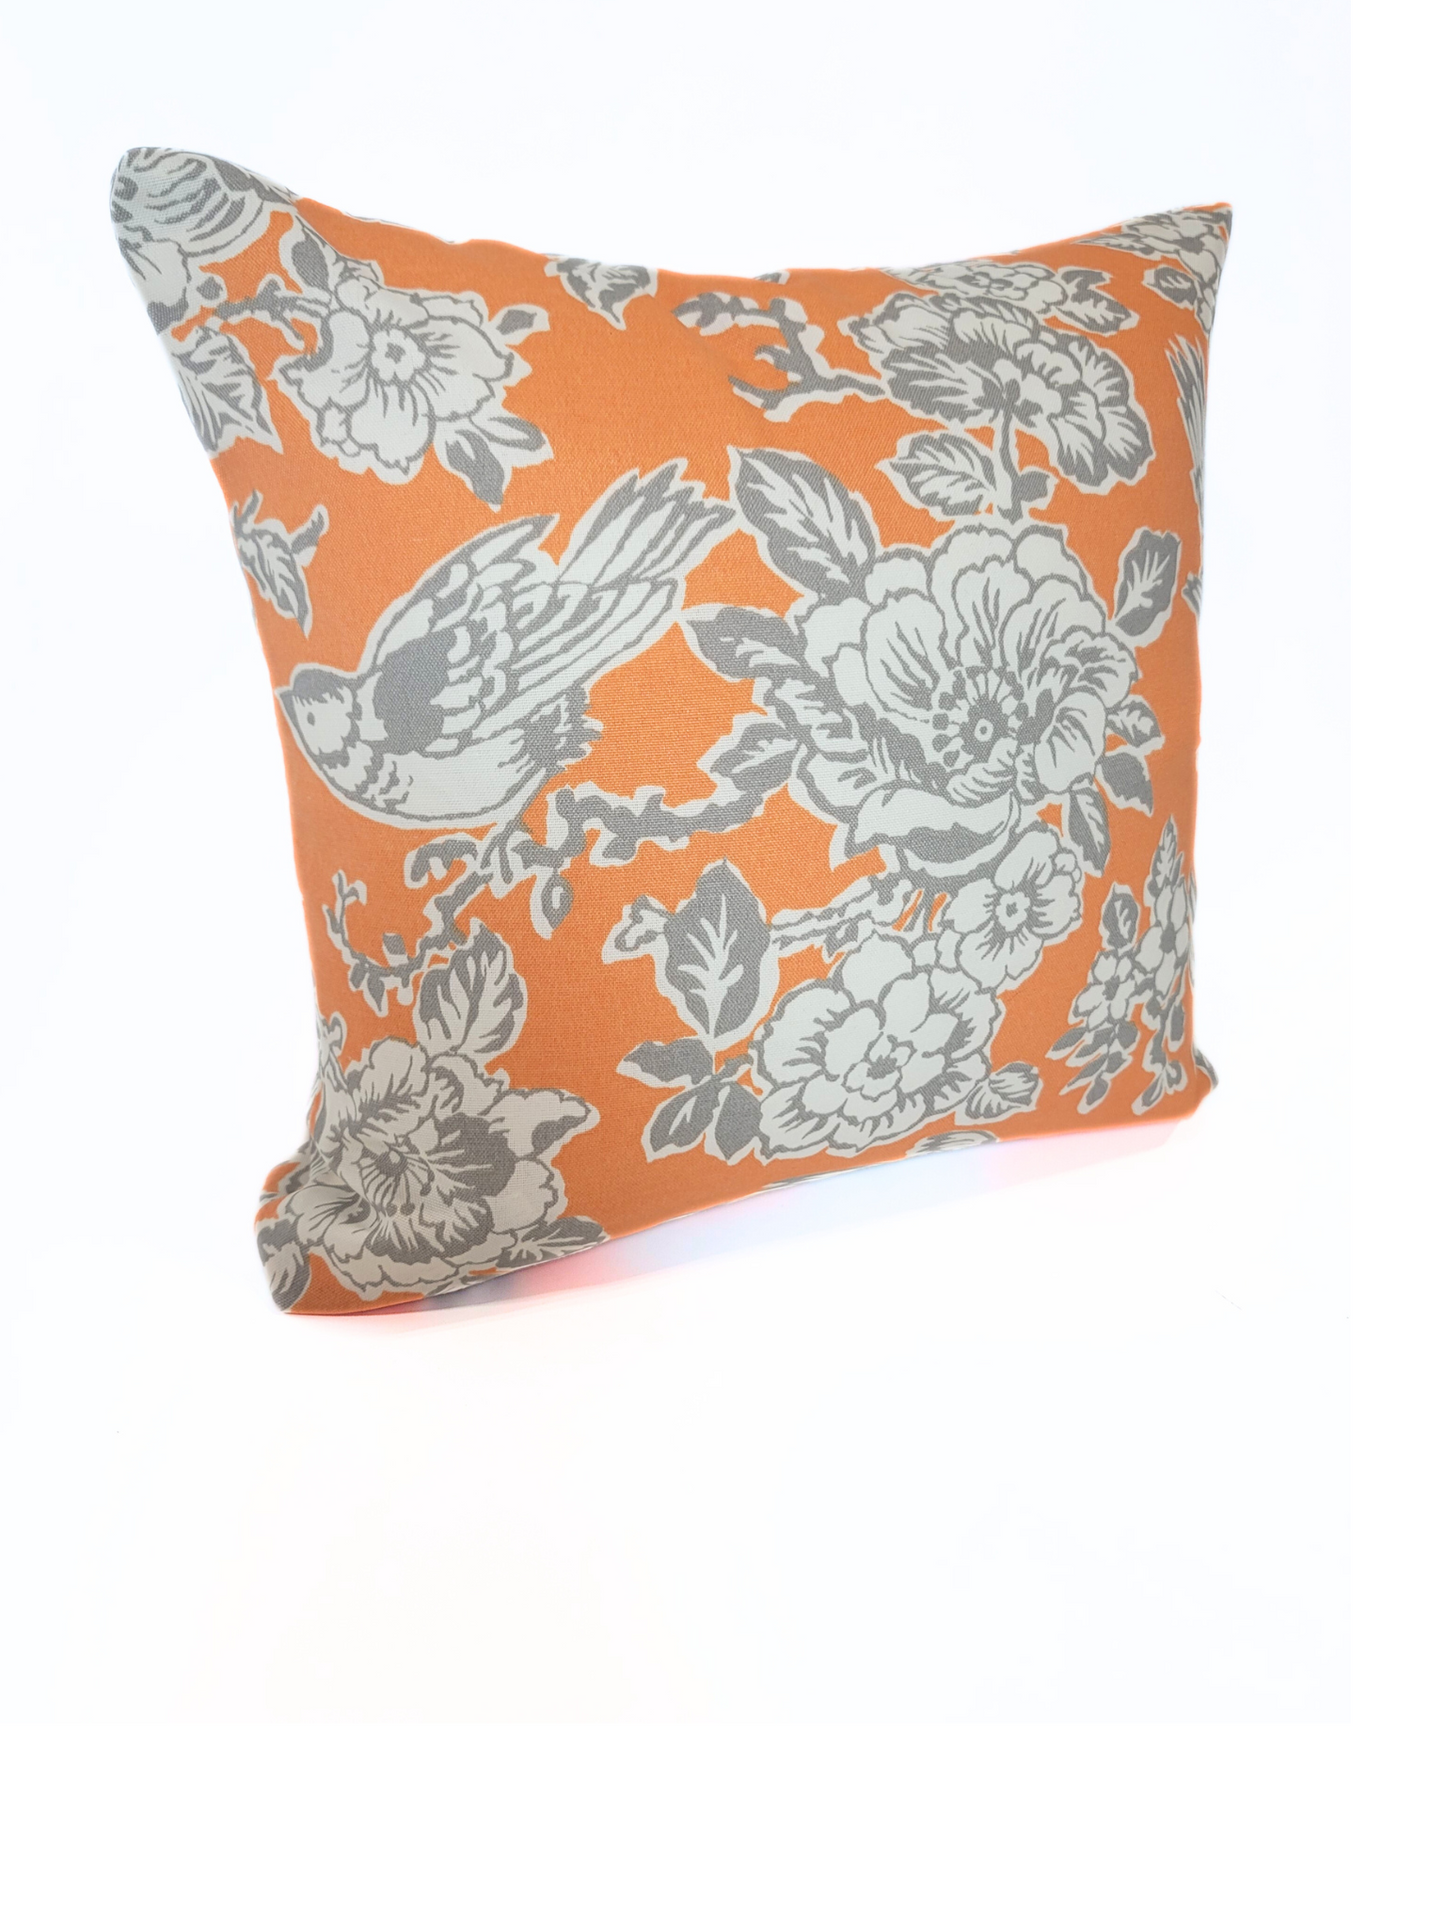 Melonbird Outdoor Toss Pillow Cover